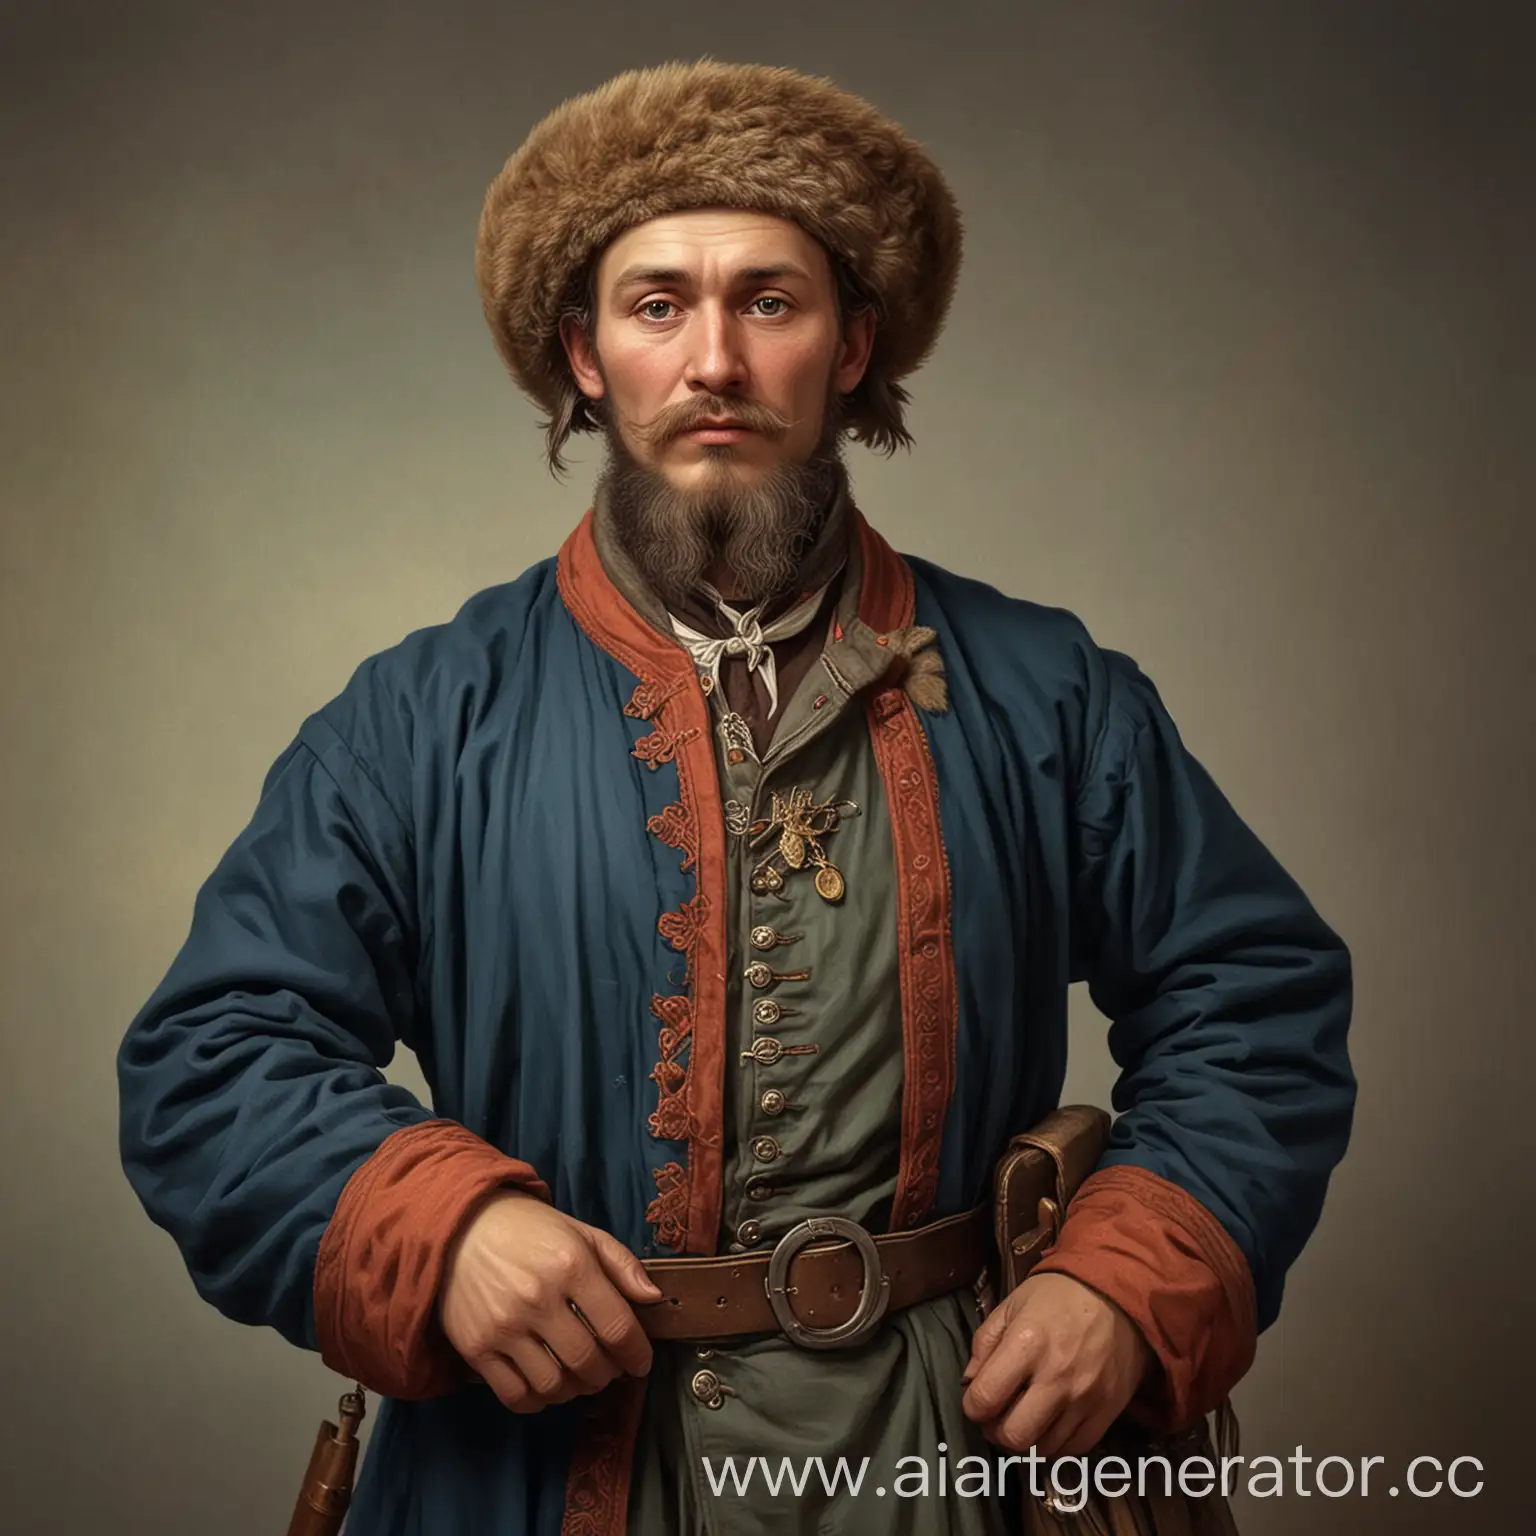 Обычный русский торговец 19 века, изображенный до живота